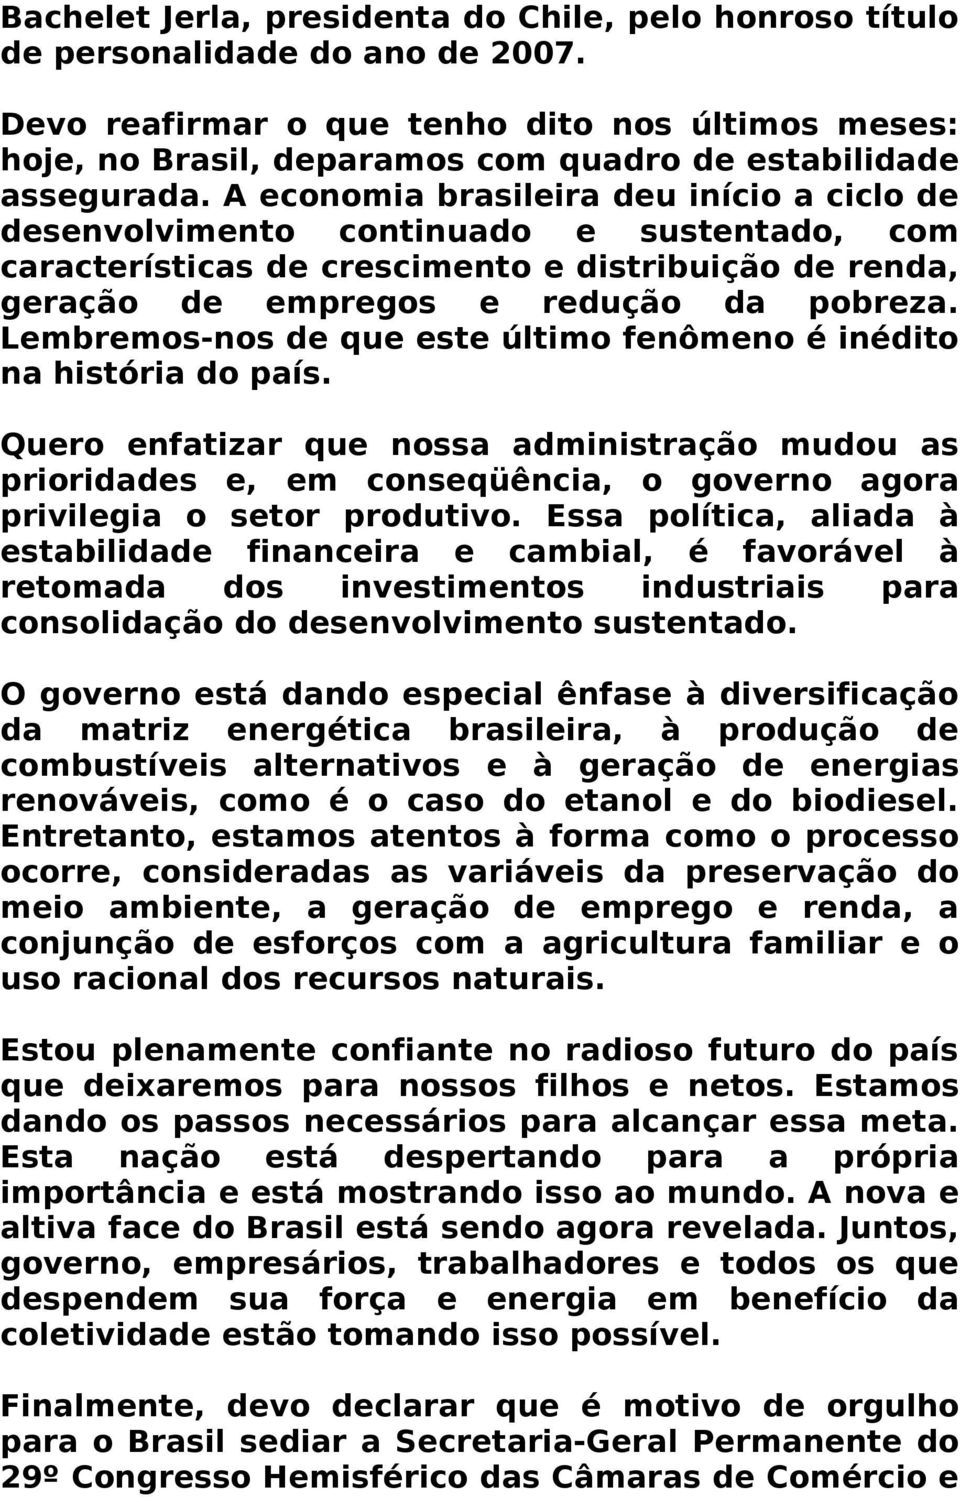 A economia brasileira deu início a ciclo de desenvolvimento continuado e sustentado, com características de crescimento e distribuição de renda, geração de empregos e redução da pobreza.